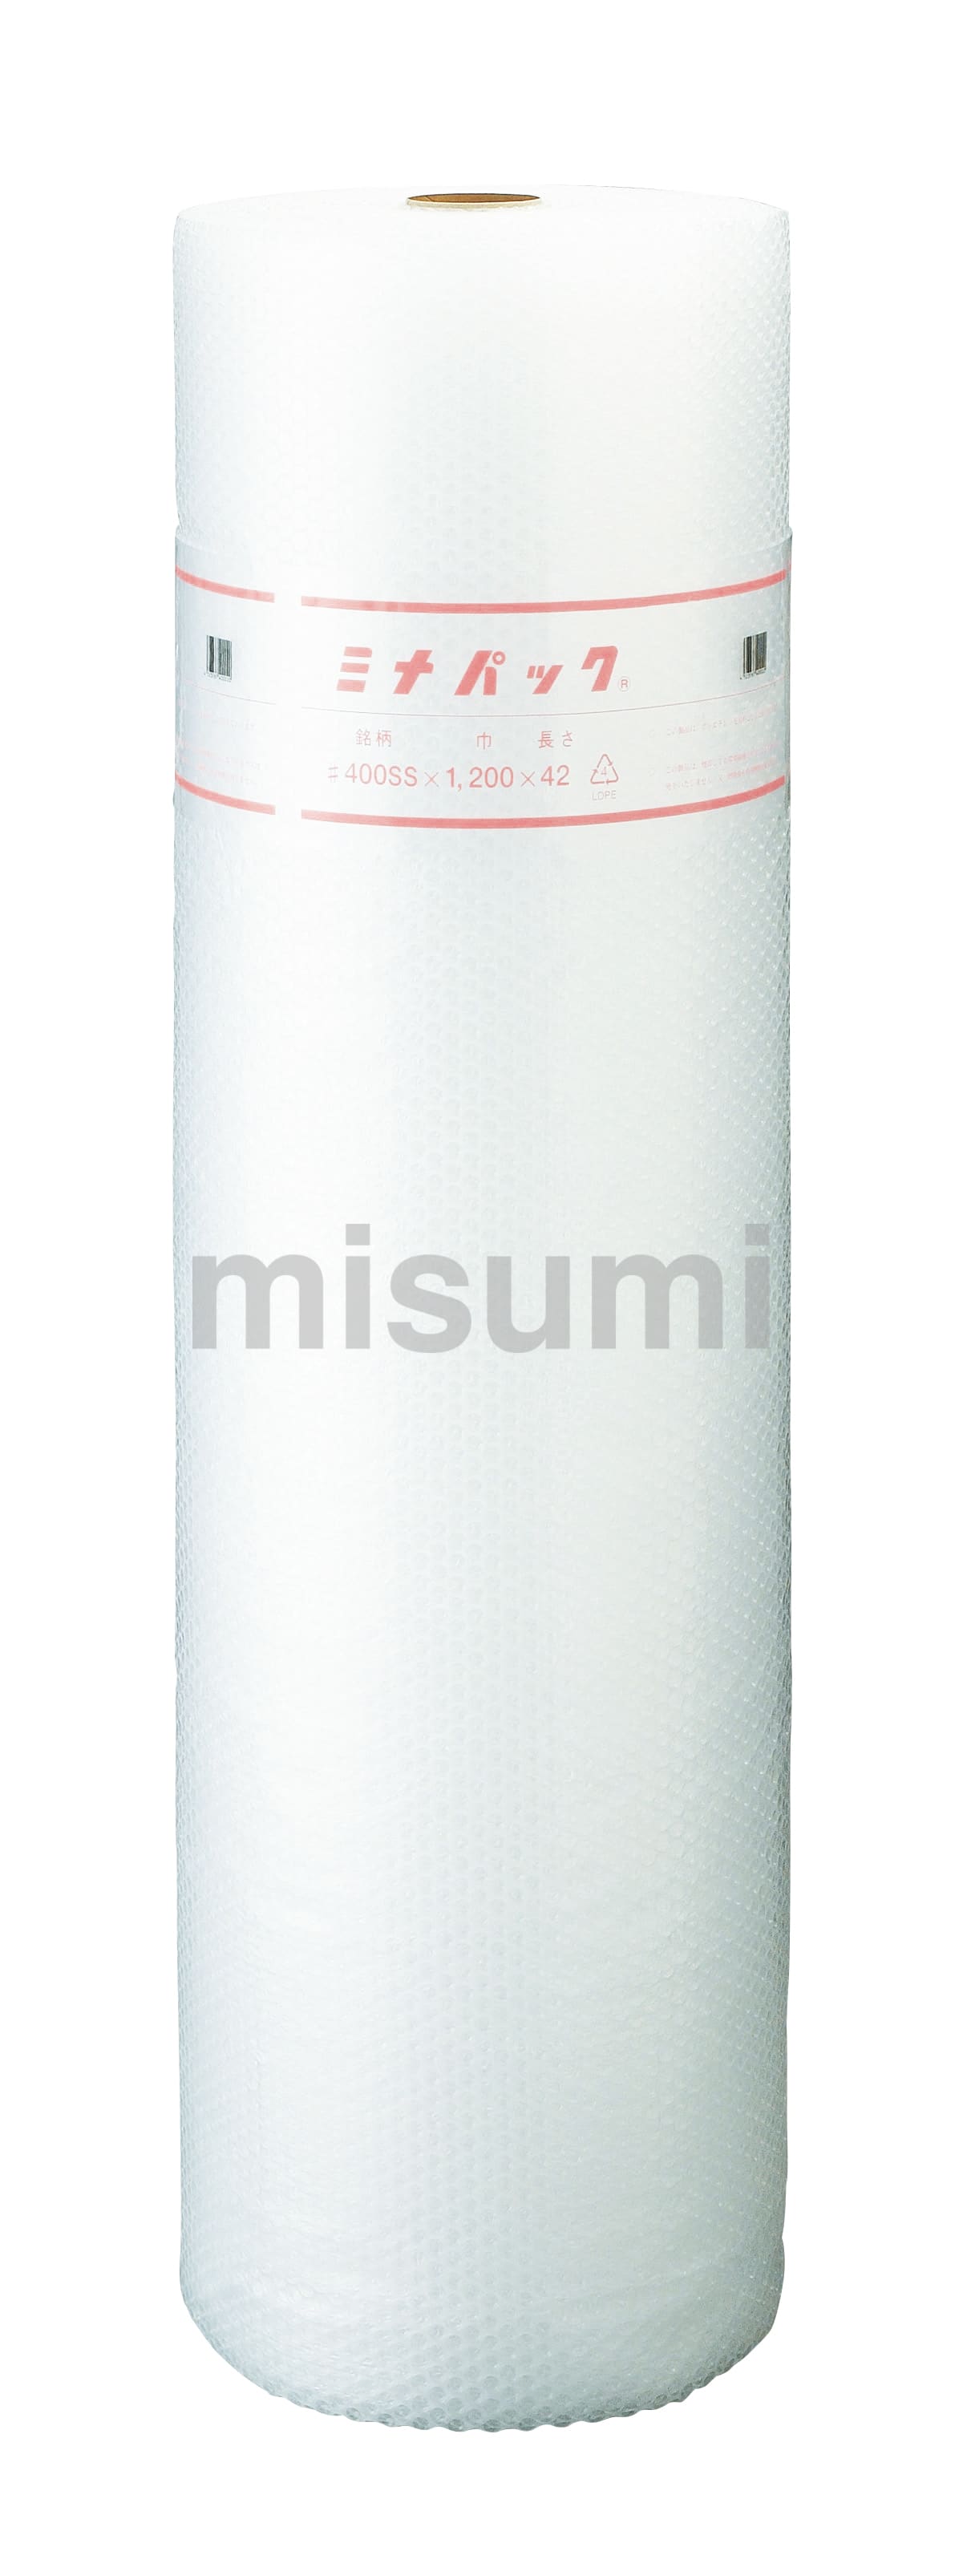 気泡緩衝材 ミナパック 2層軽量タイプ 酒井化学工業 MISUMI(ミスミ)